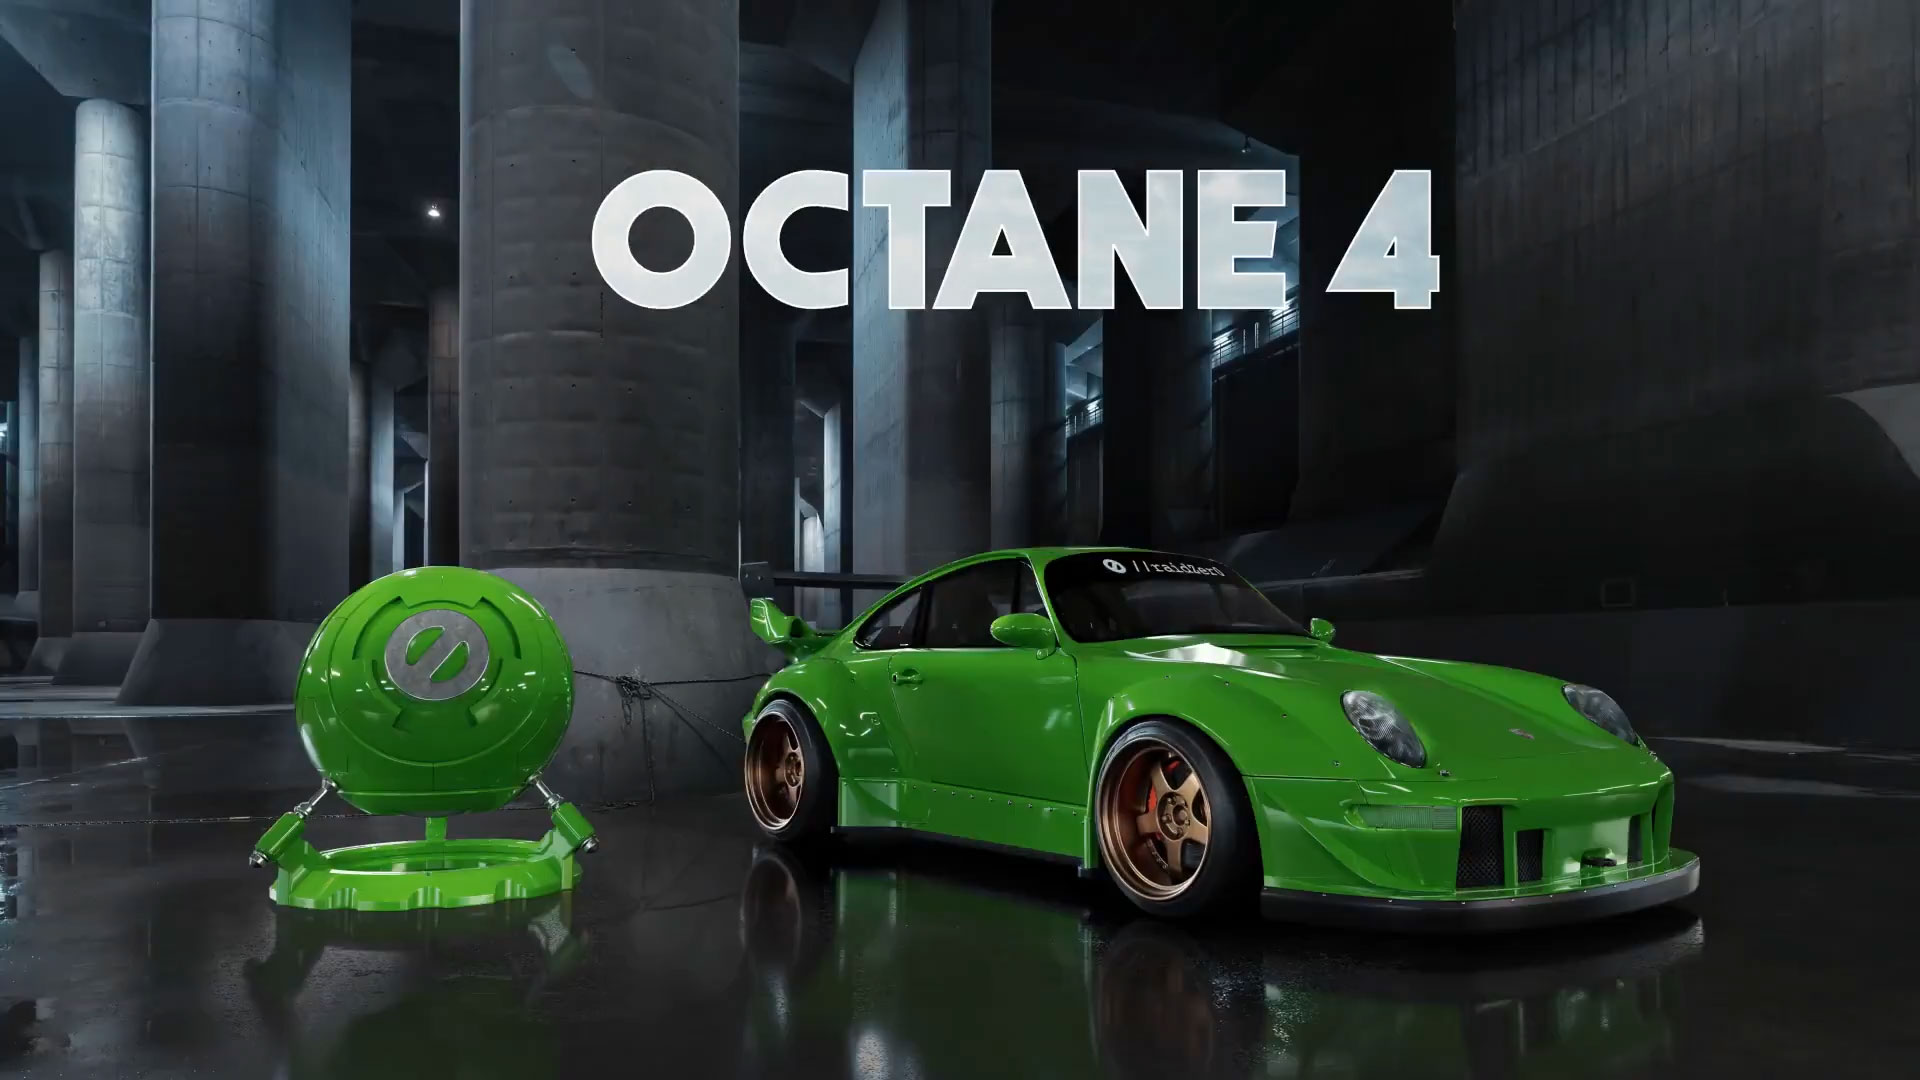 OCtane材质预设-1套高品质车漆材质预设oc车漆材质预设oc汽车材质预设